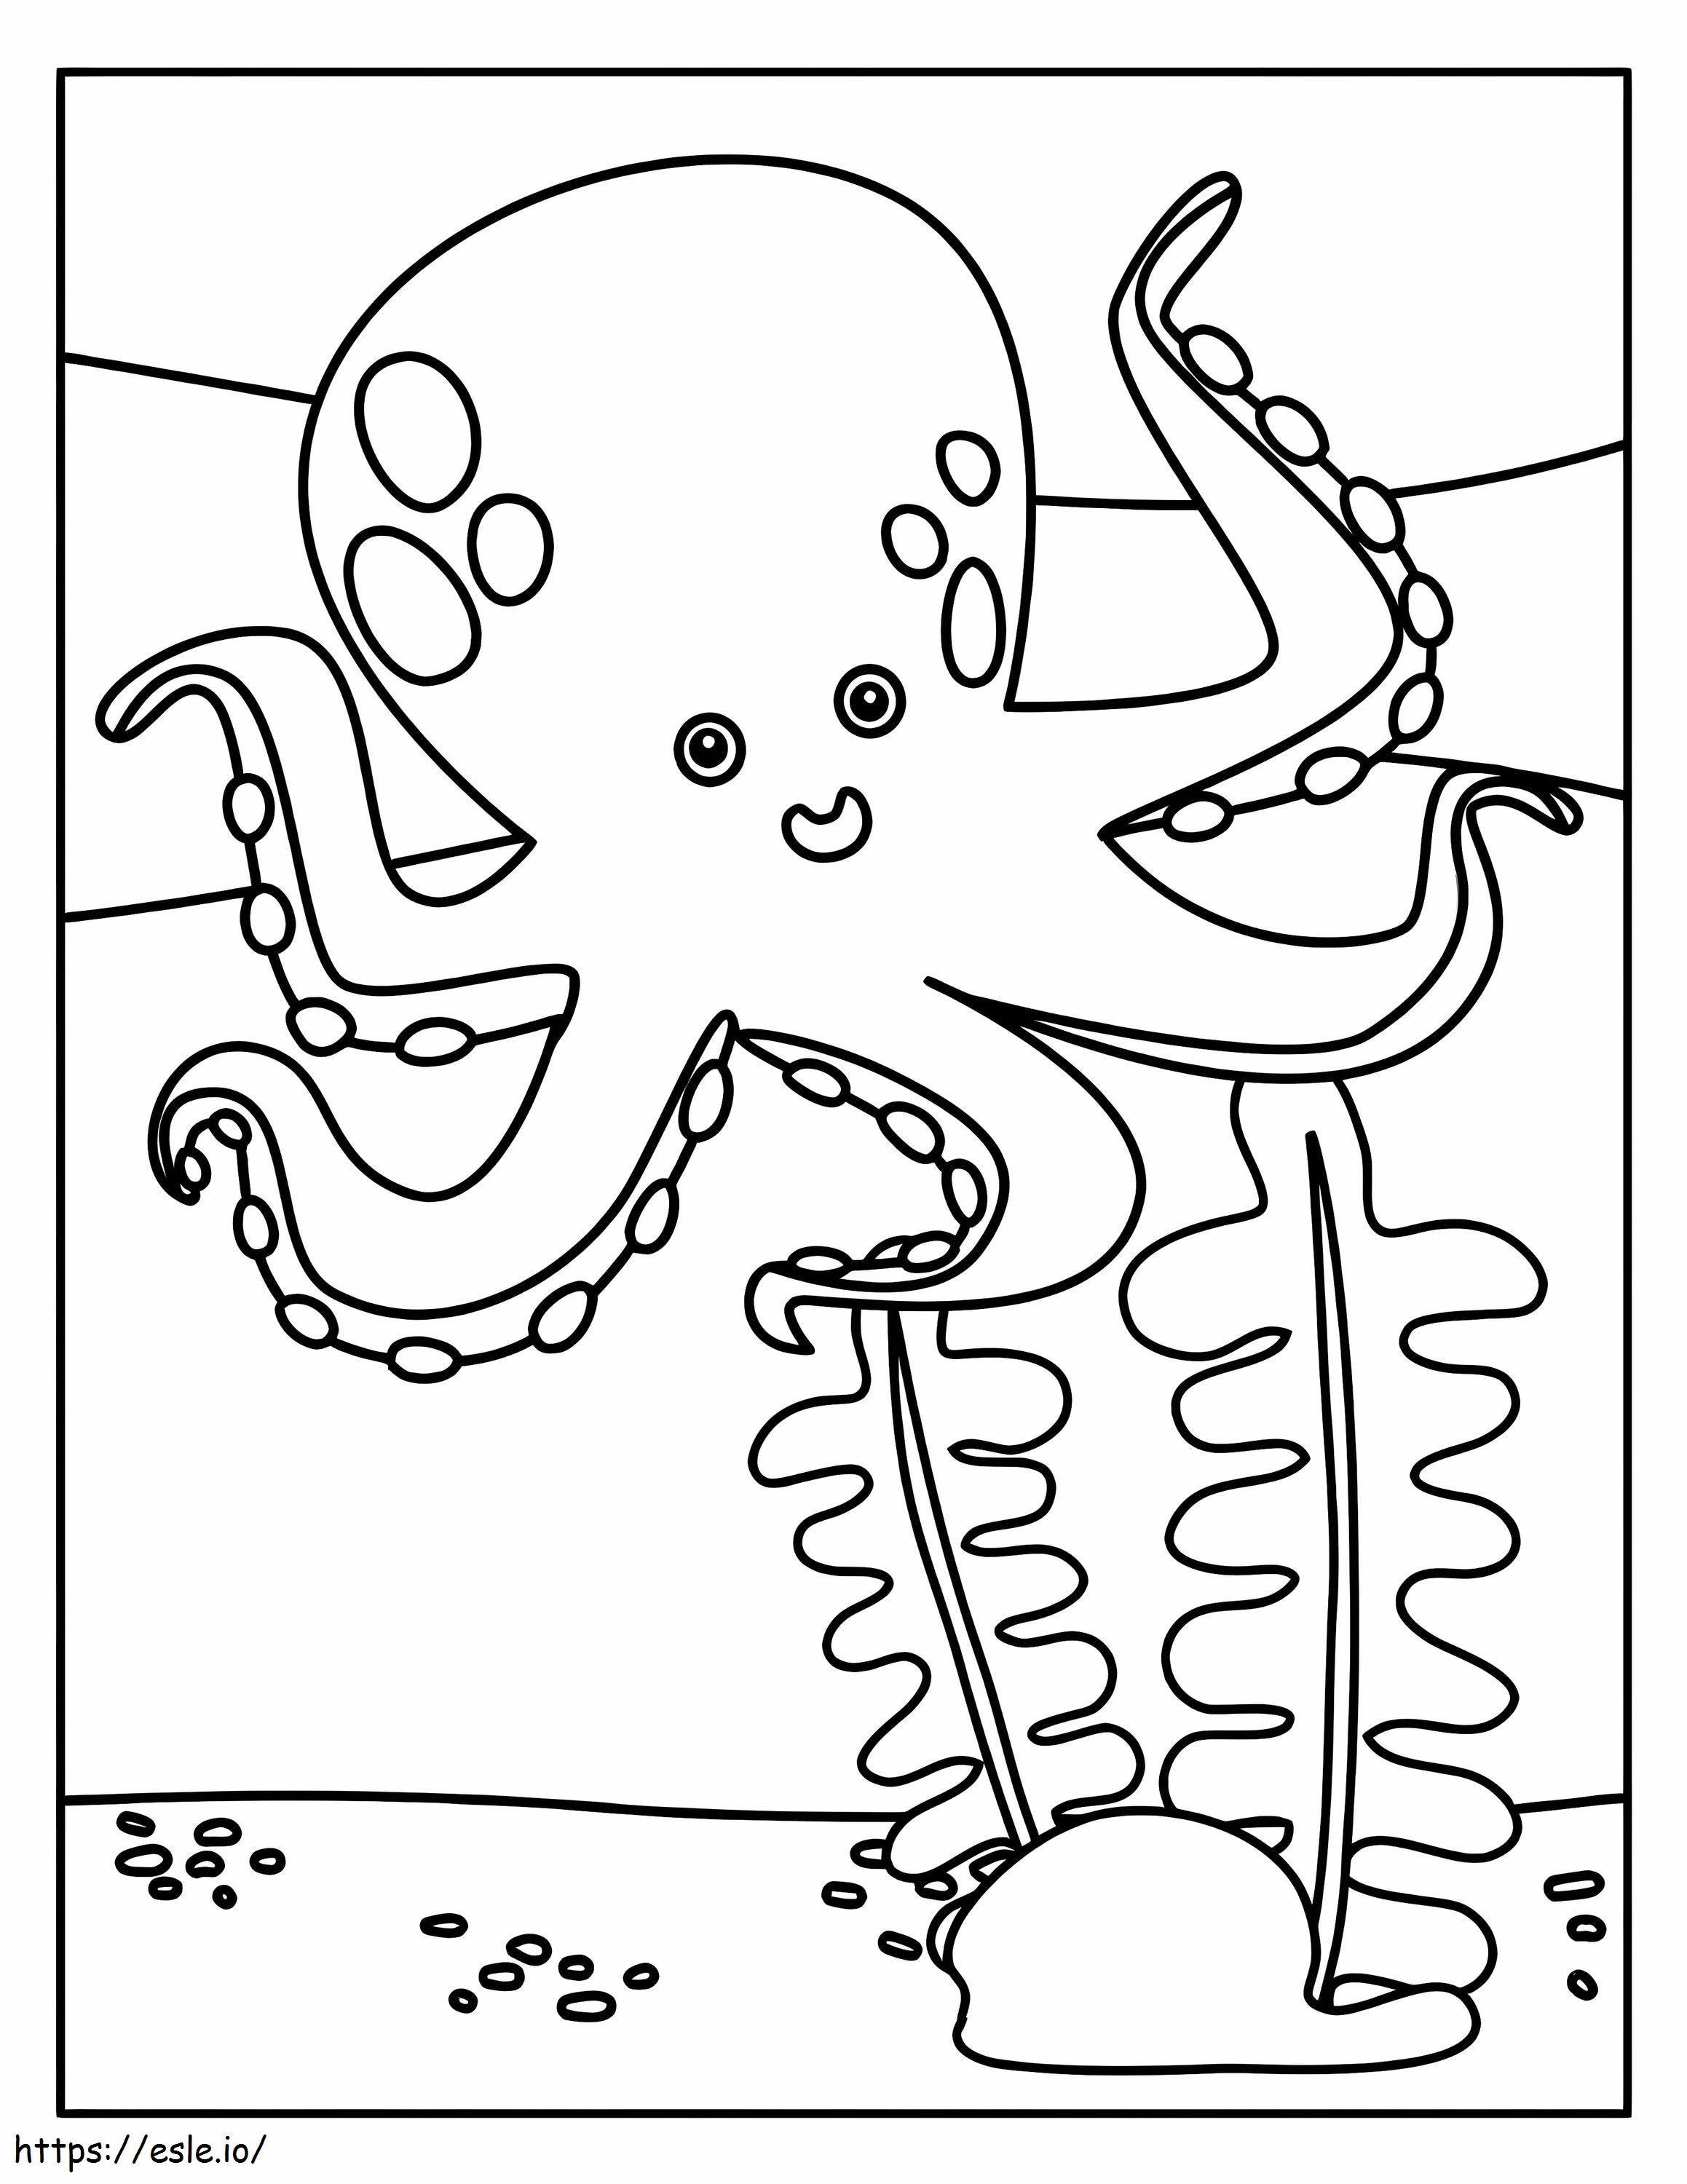 Oktopus und Koralle ausmalbilder